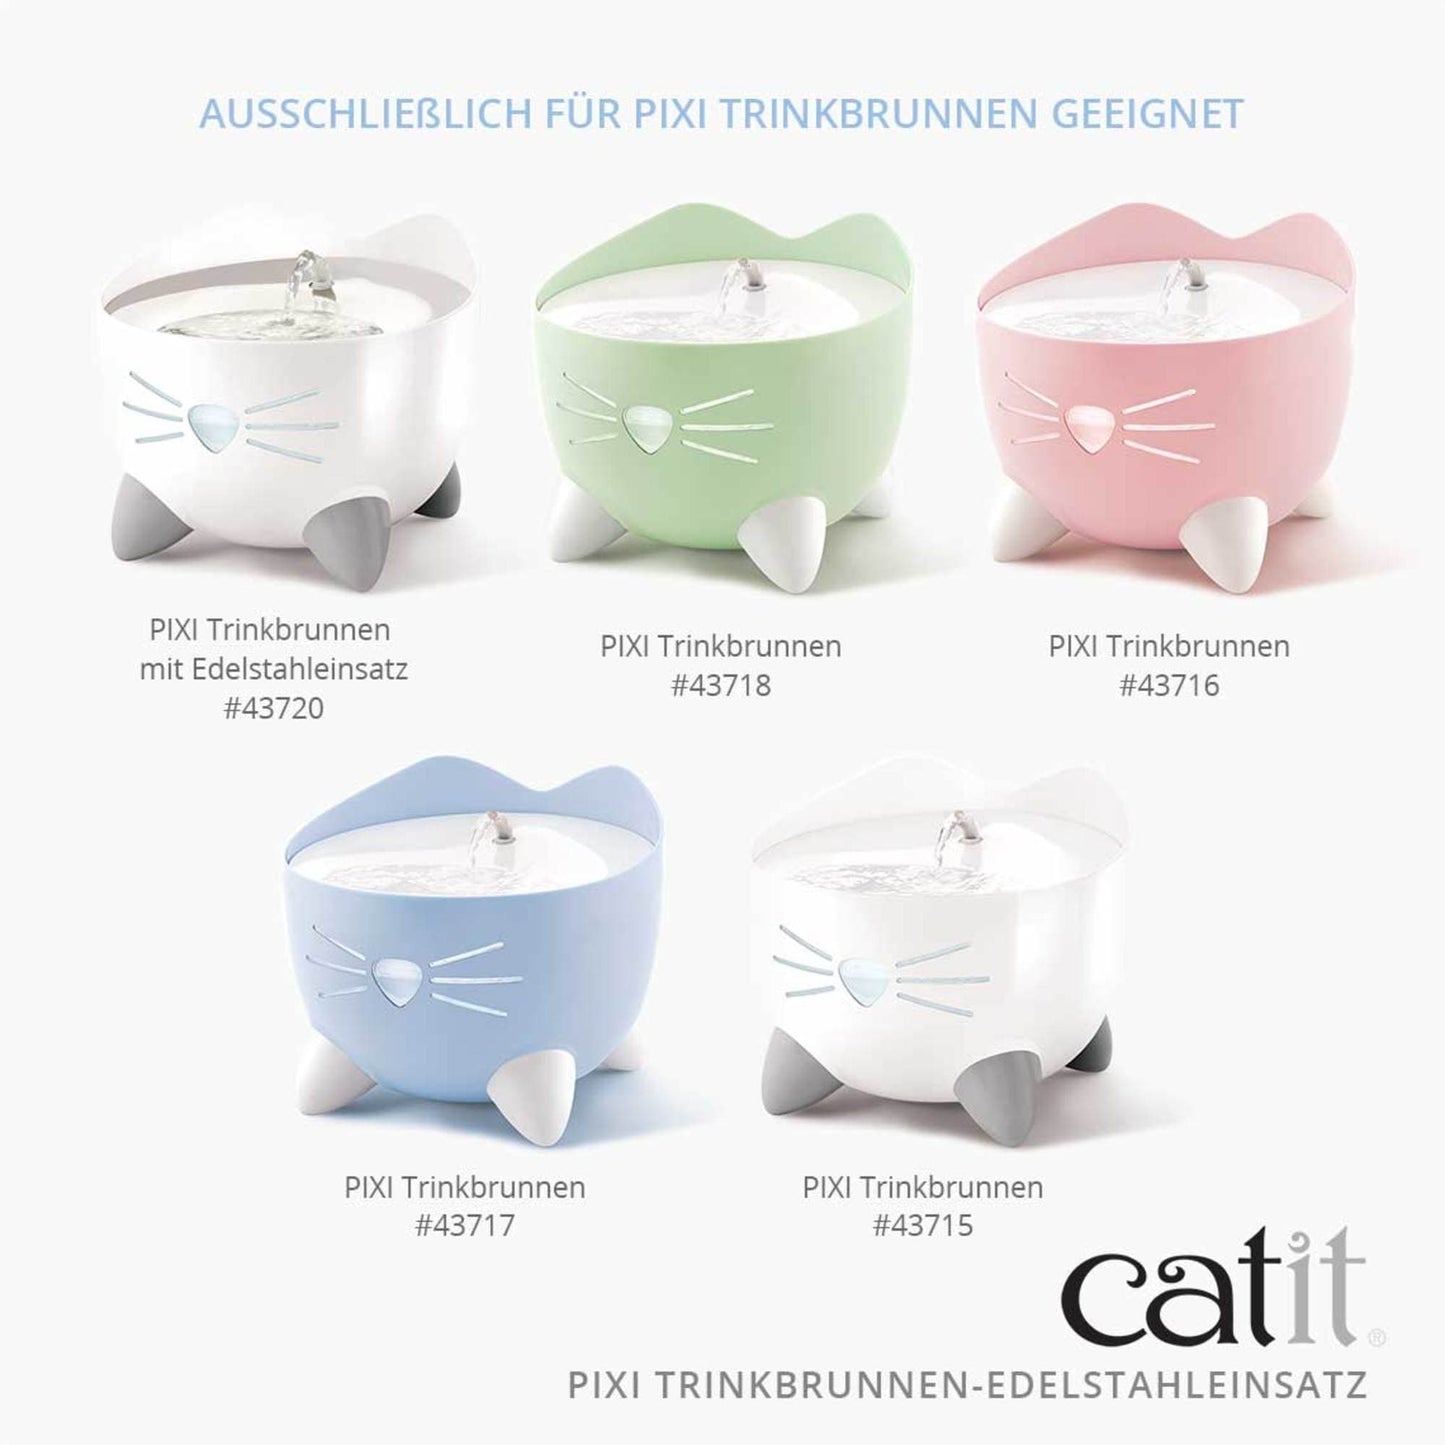 Catit PIXI Trinkbrunnen-Edelstahleinsatz